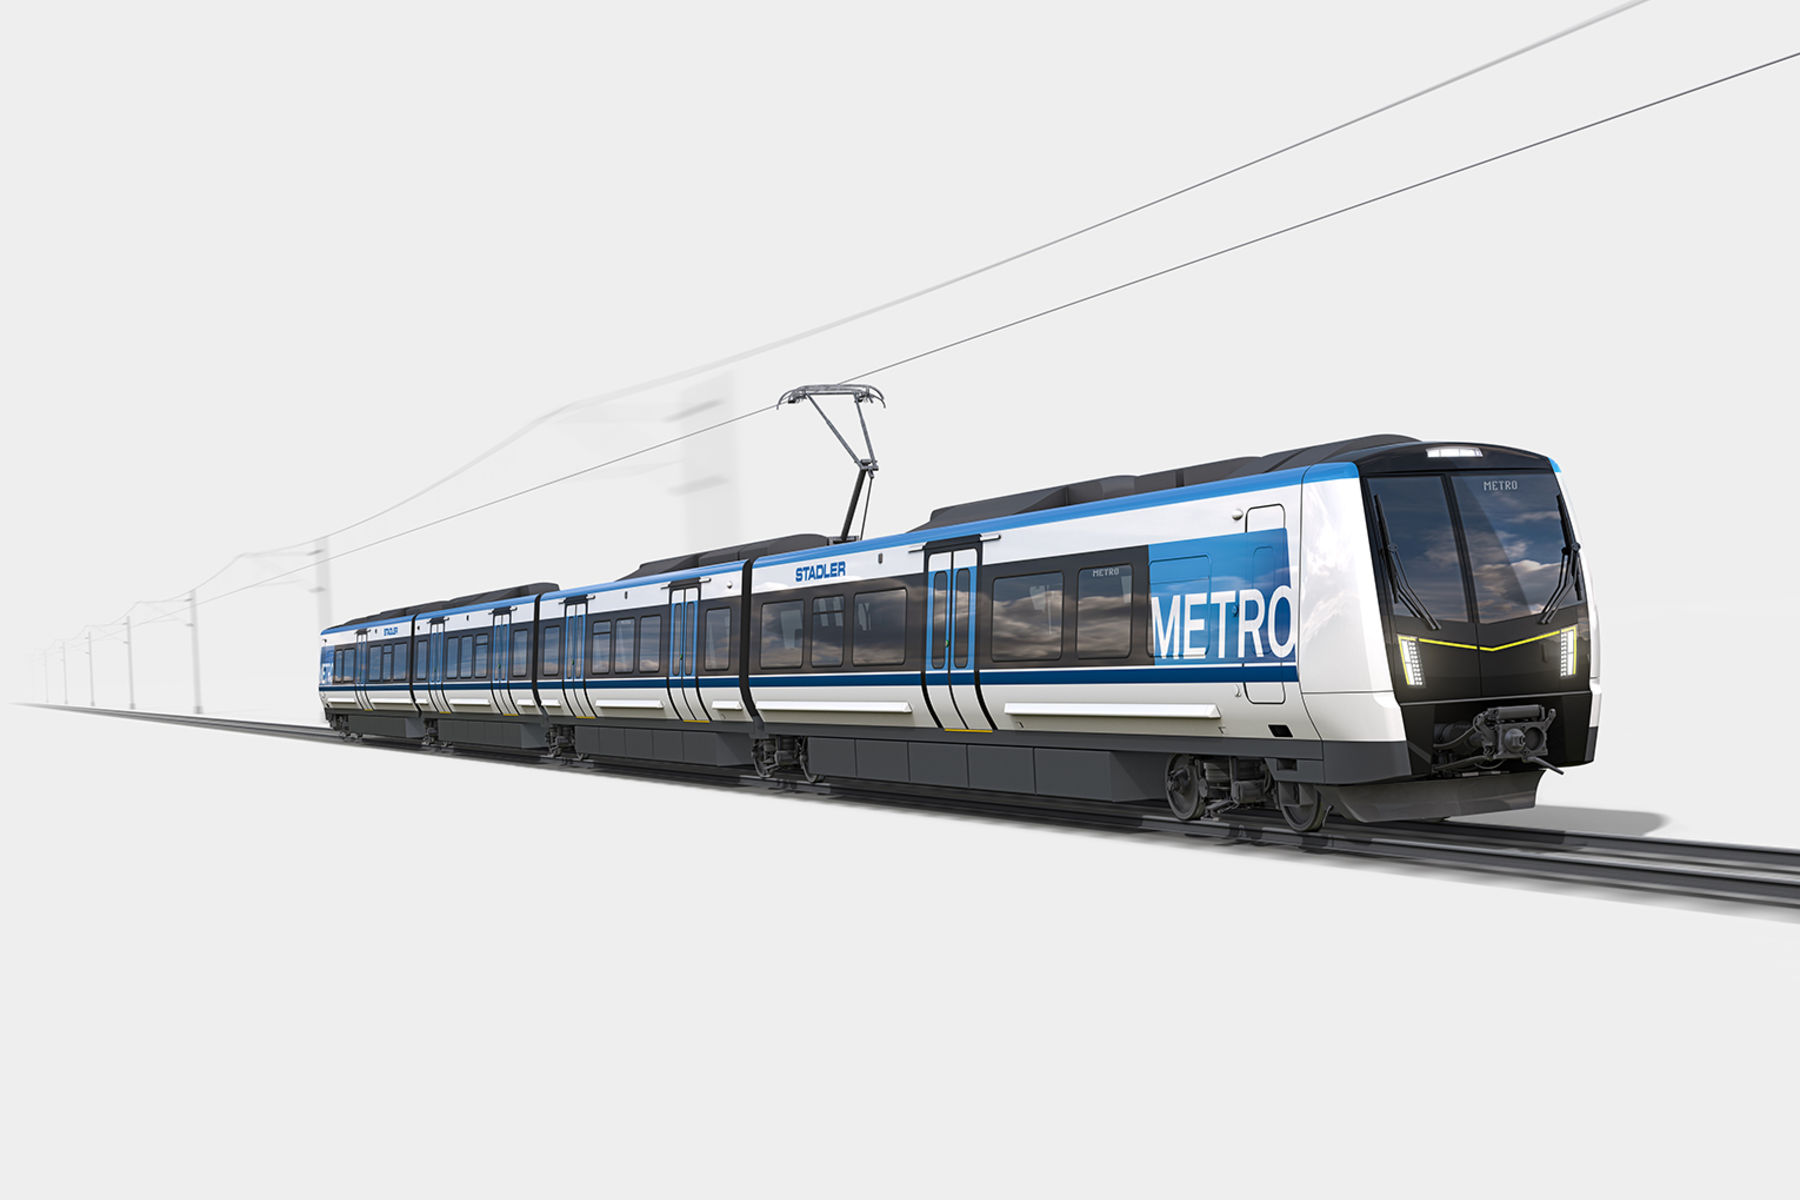 Basic model render of the Stadler metro trains